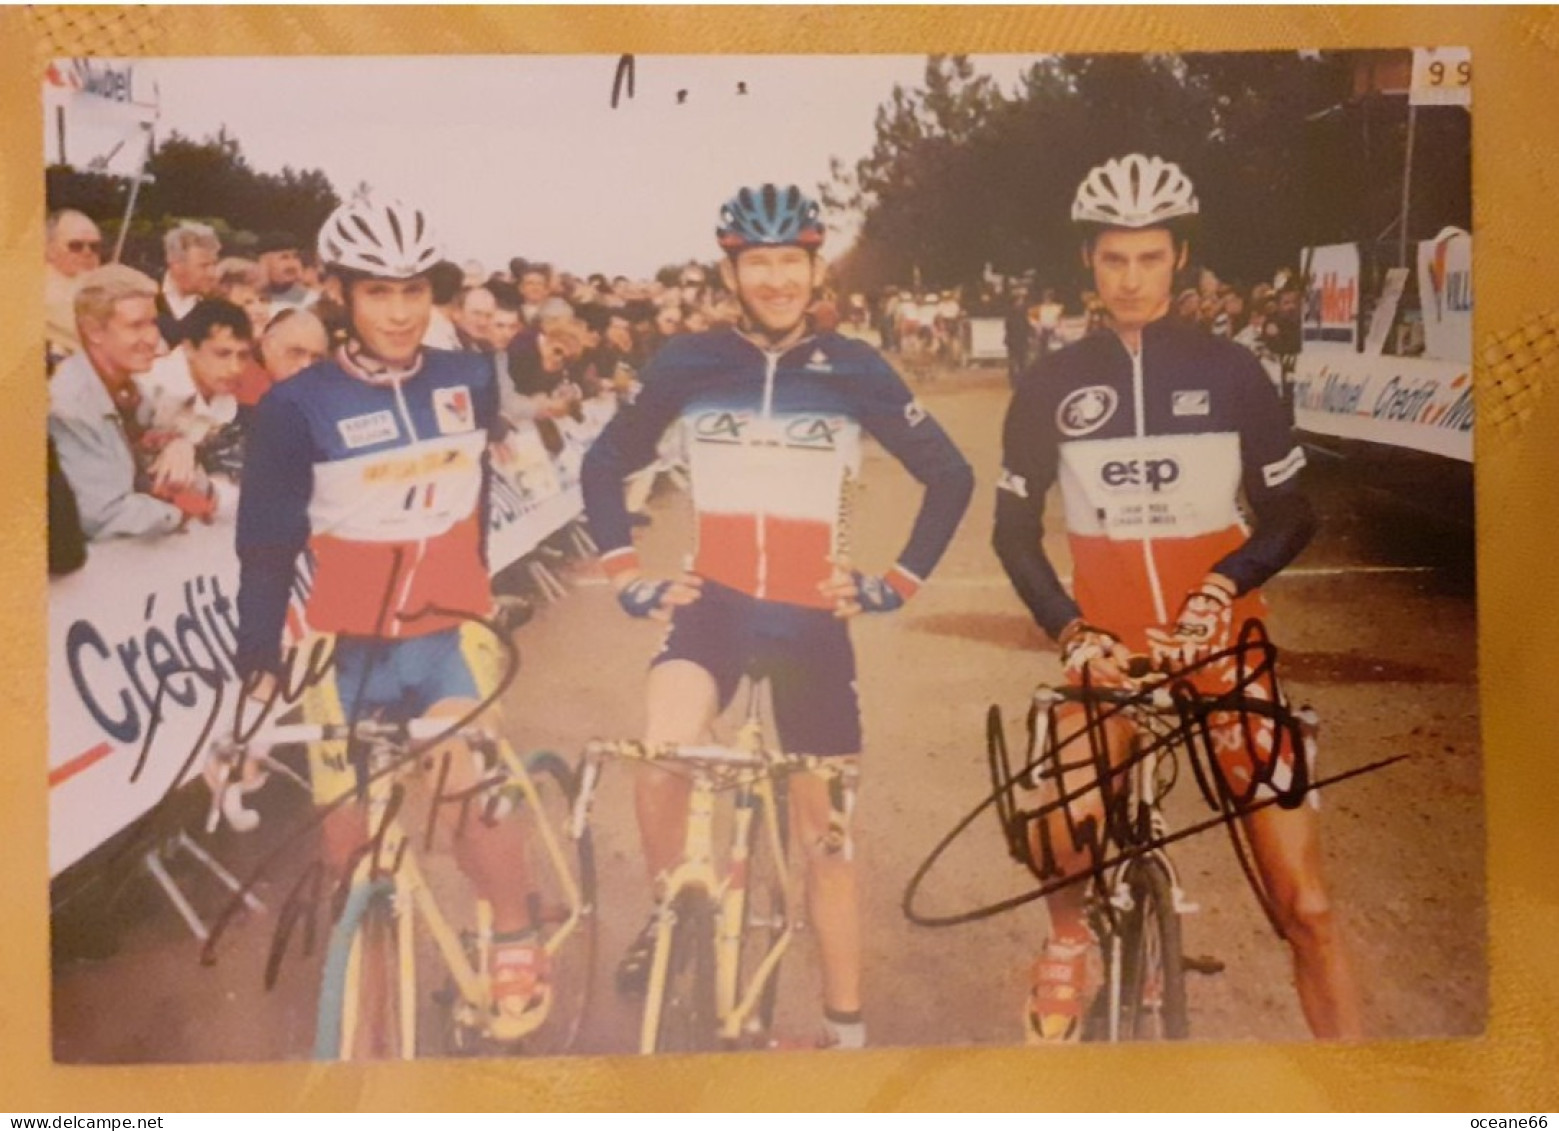 Autographes David Derepas Et Christophe Morel Avec François Simon Champions De France - Ciclismo